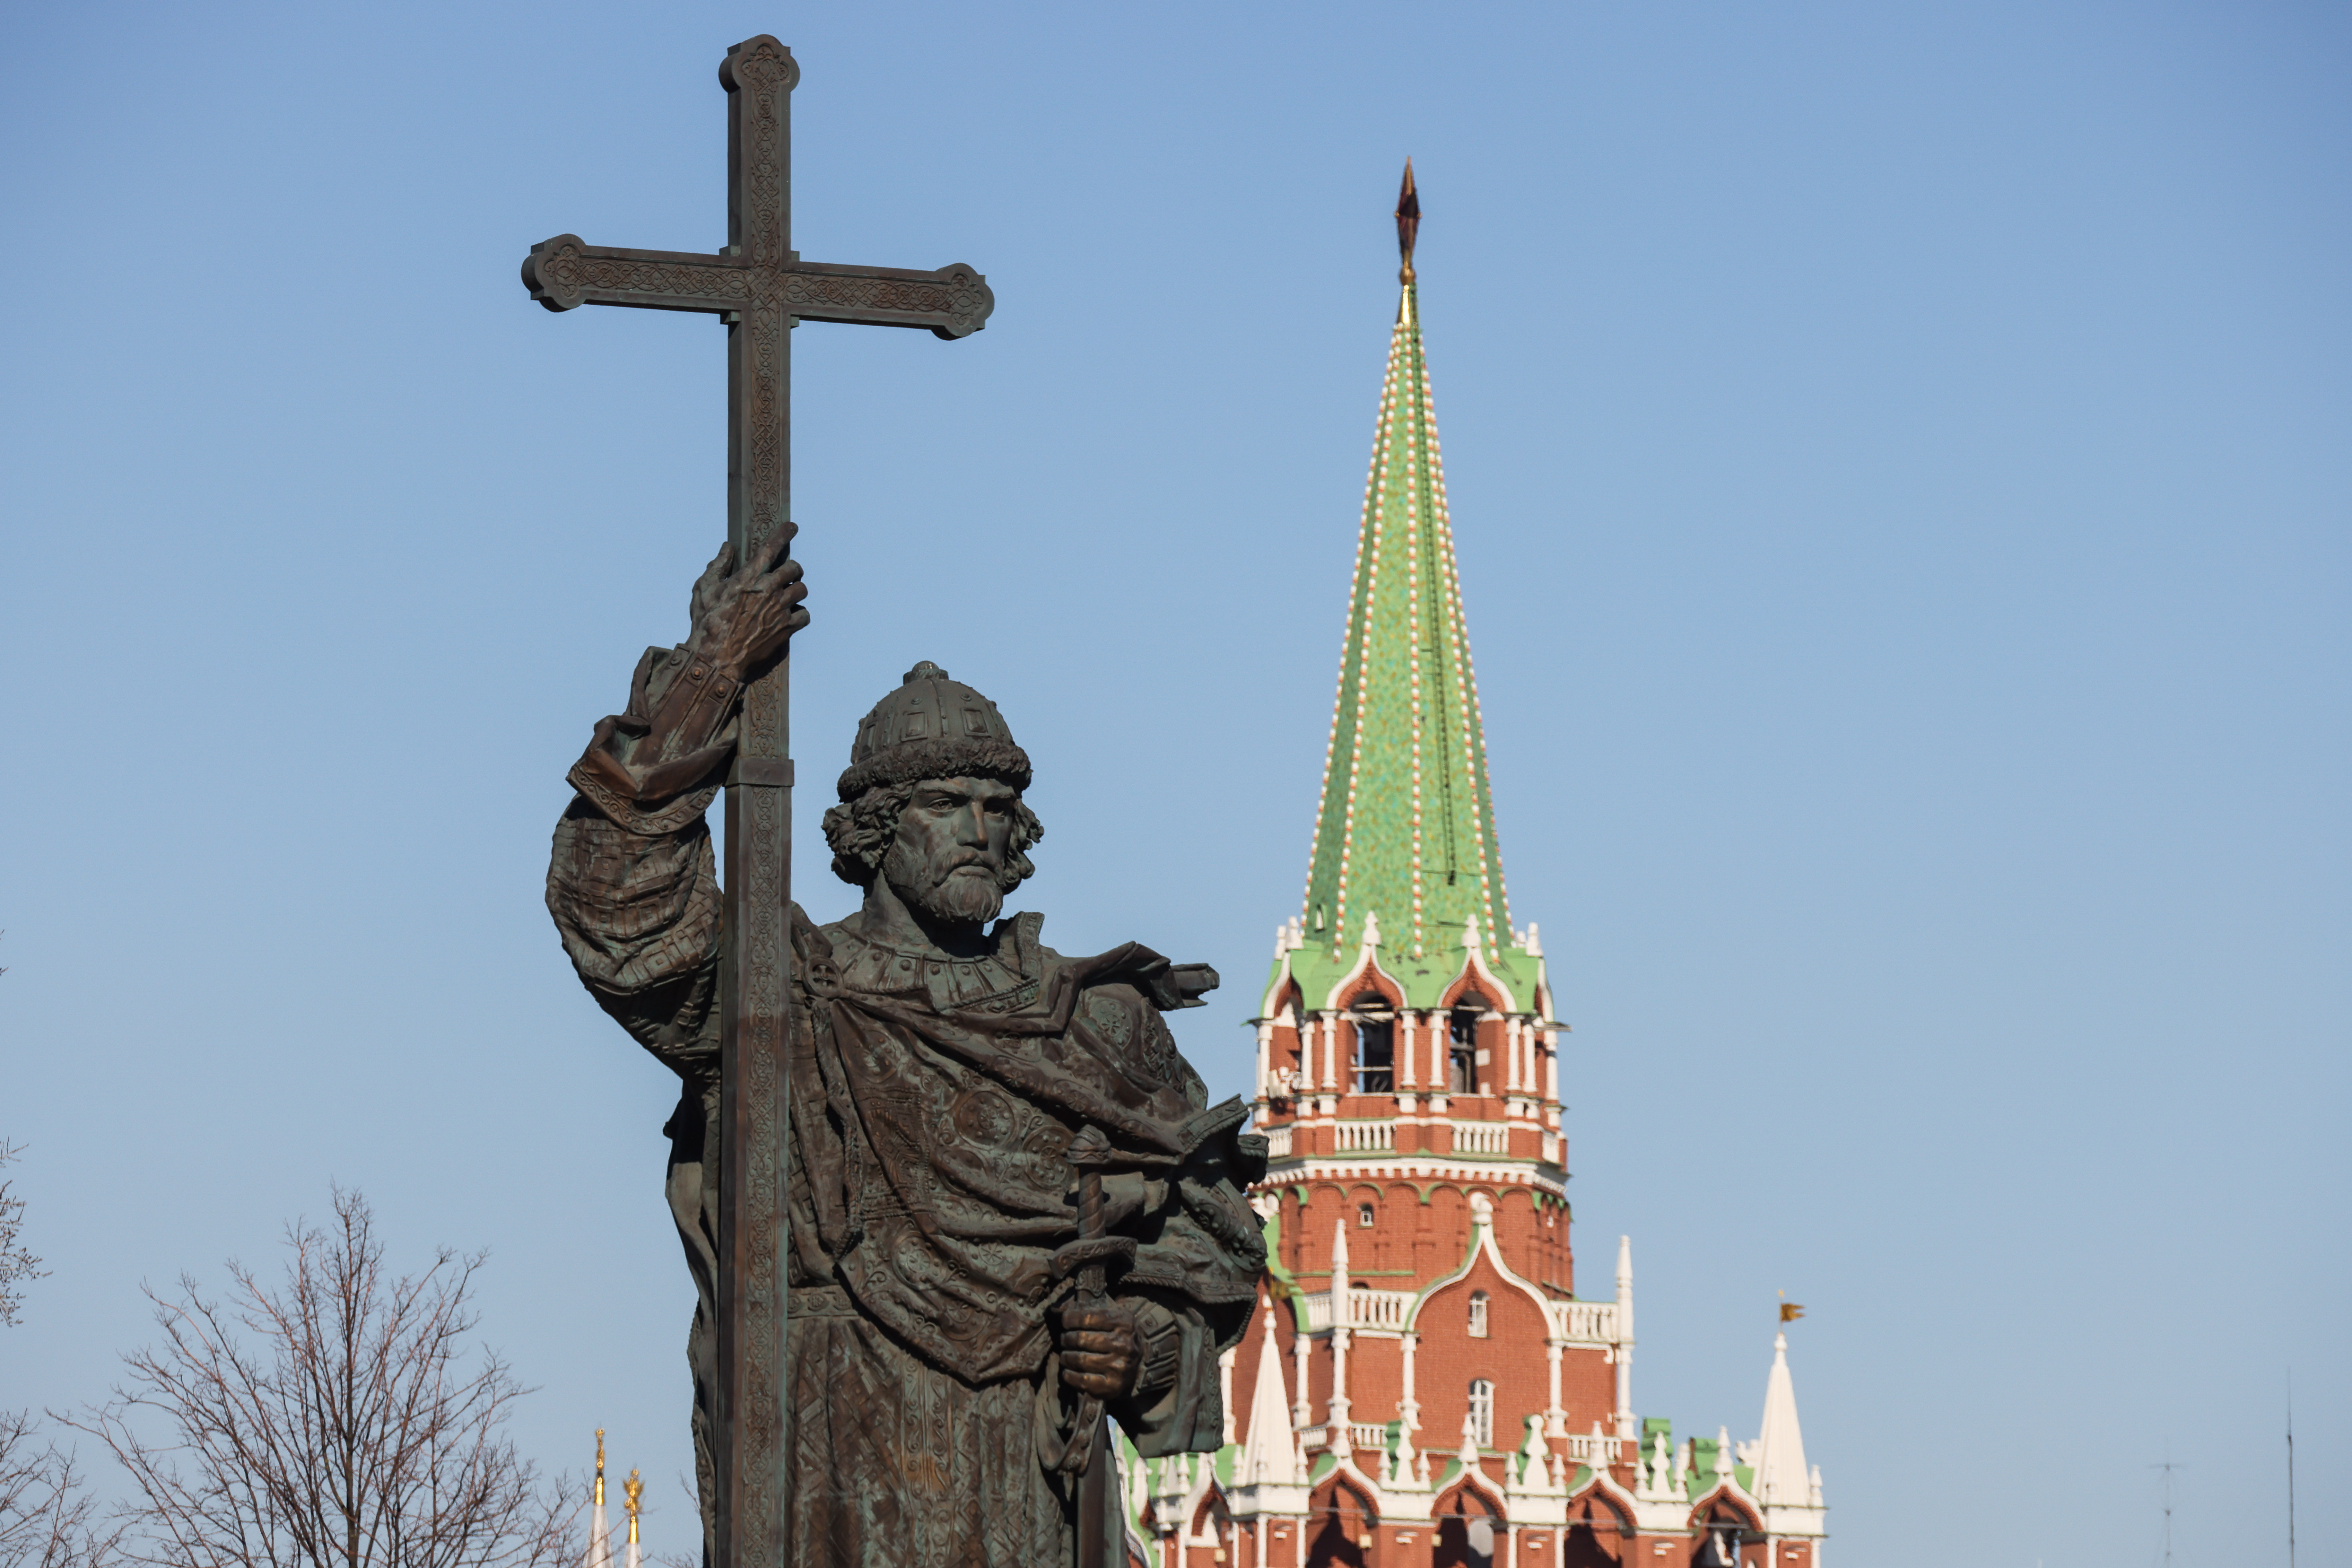 La estatua de San Vladimir en Moscú. En el origen del relato (Grosbygroup)